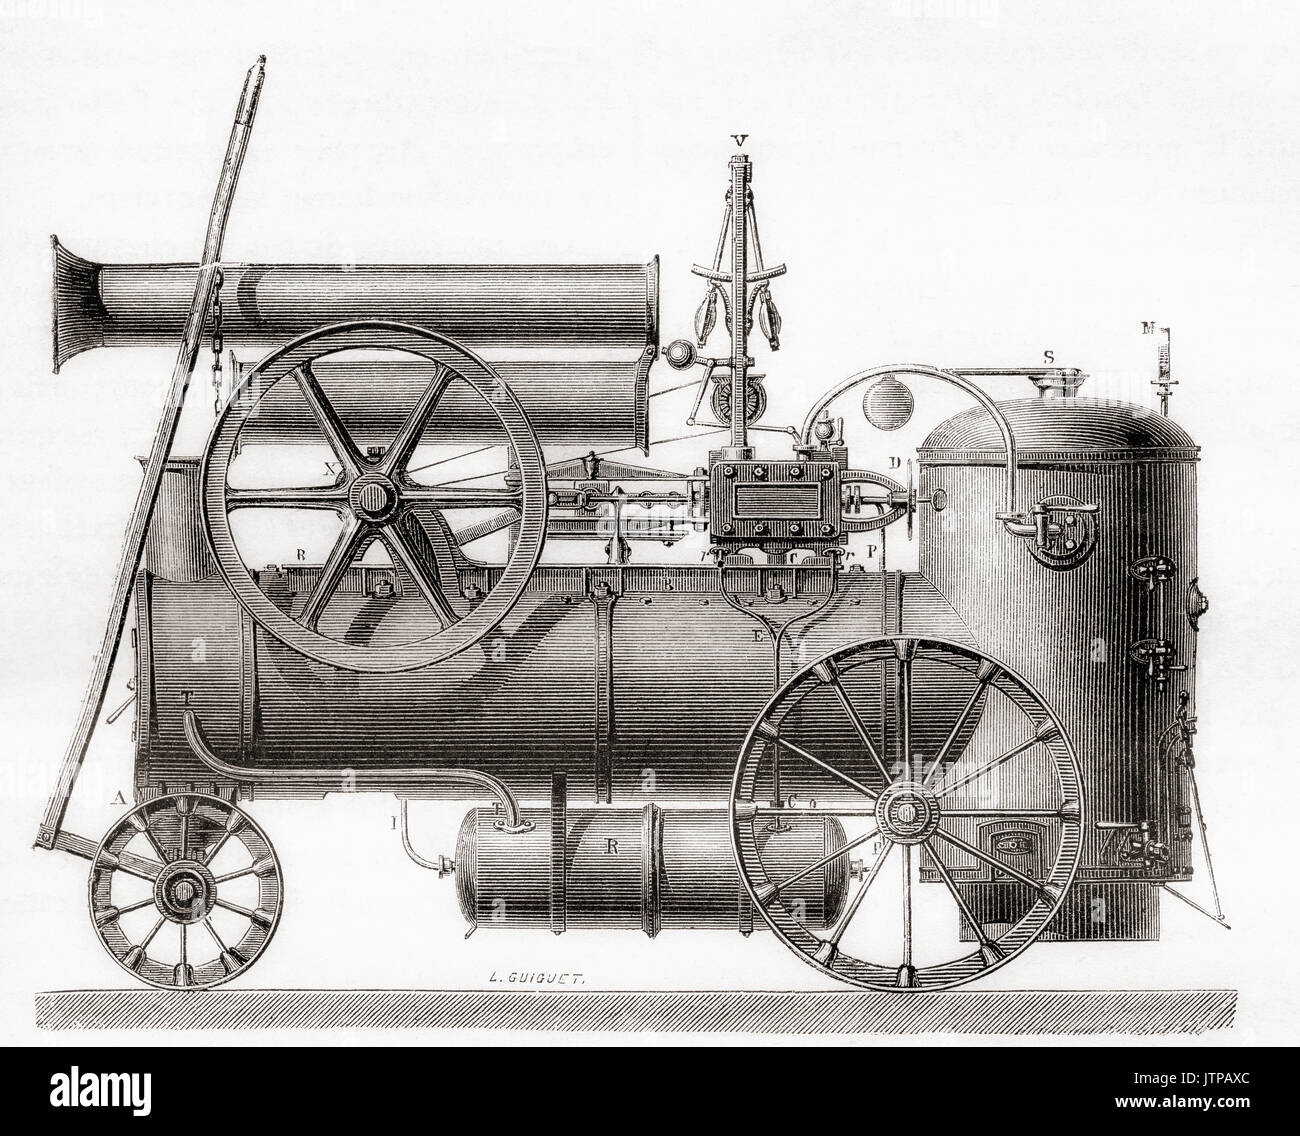 Un moteur à vapeur construit en France par la société M. Cail et Cie au 19e siècle. De : Les merveilles de la science, publié en 1870. Banque D'Images